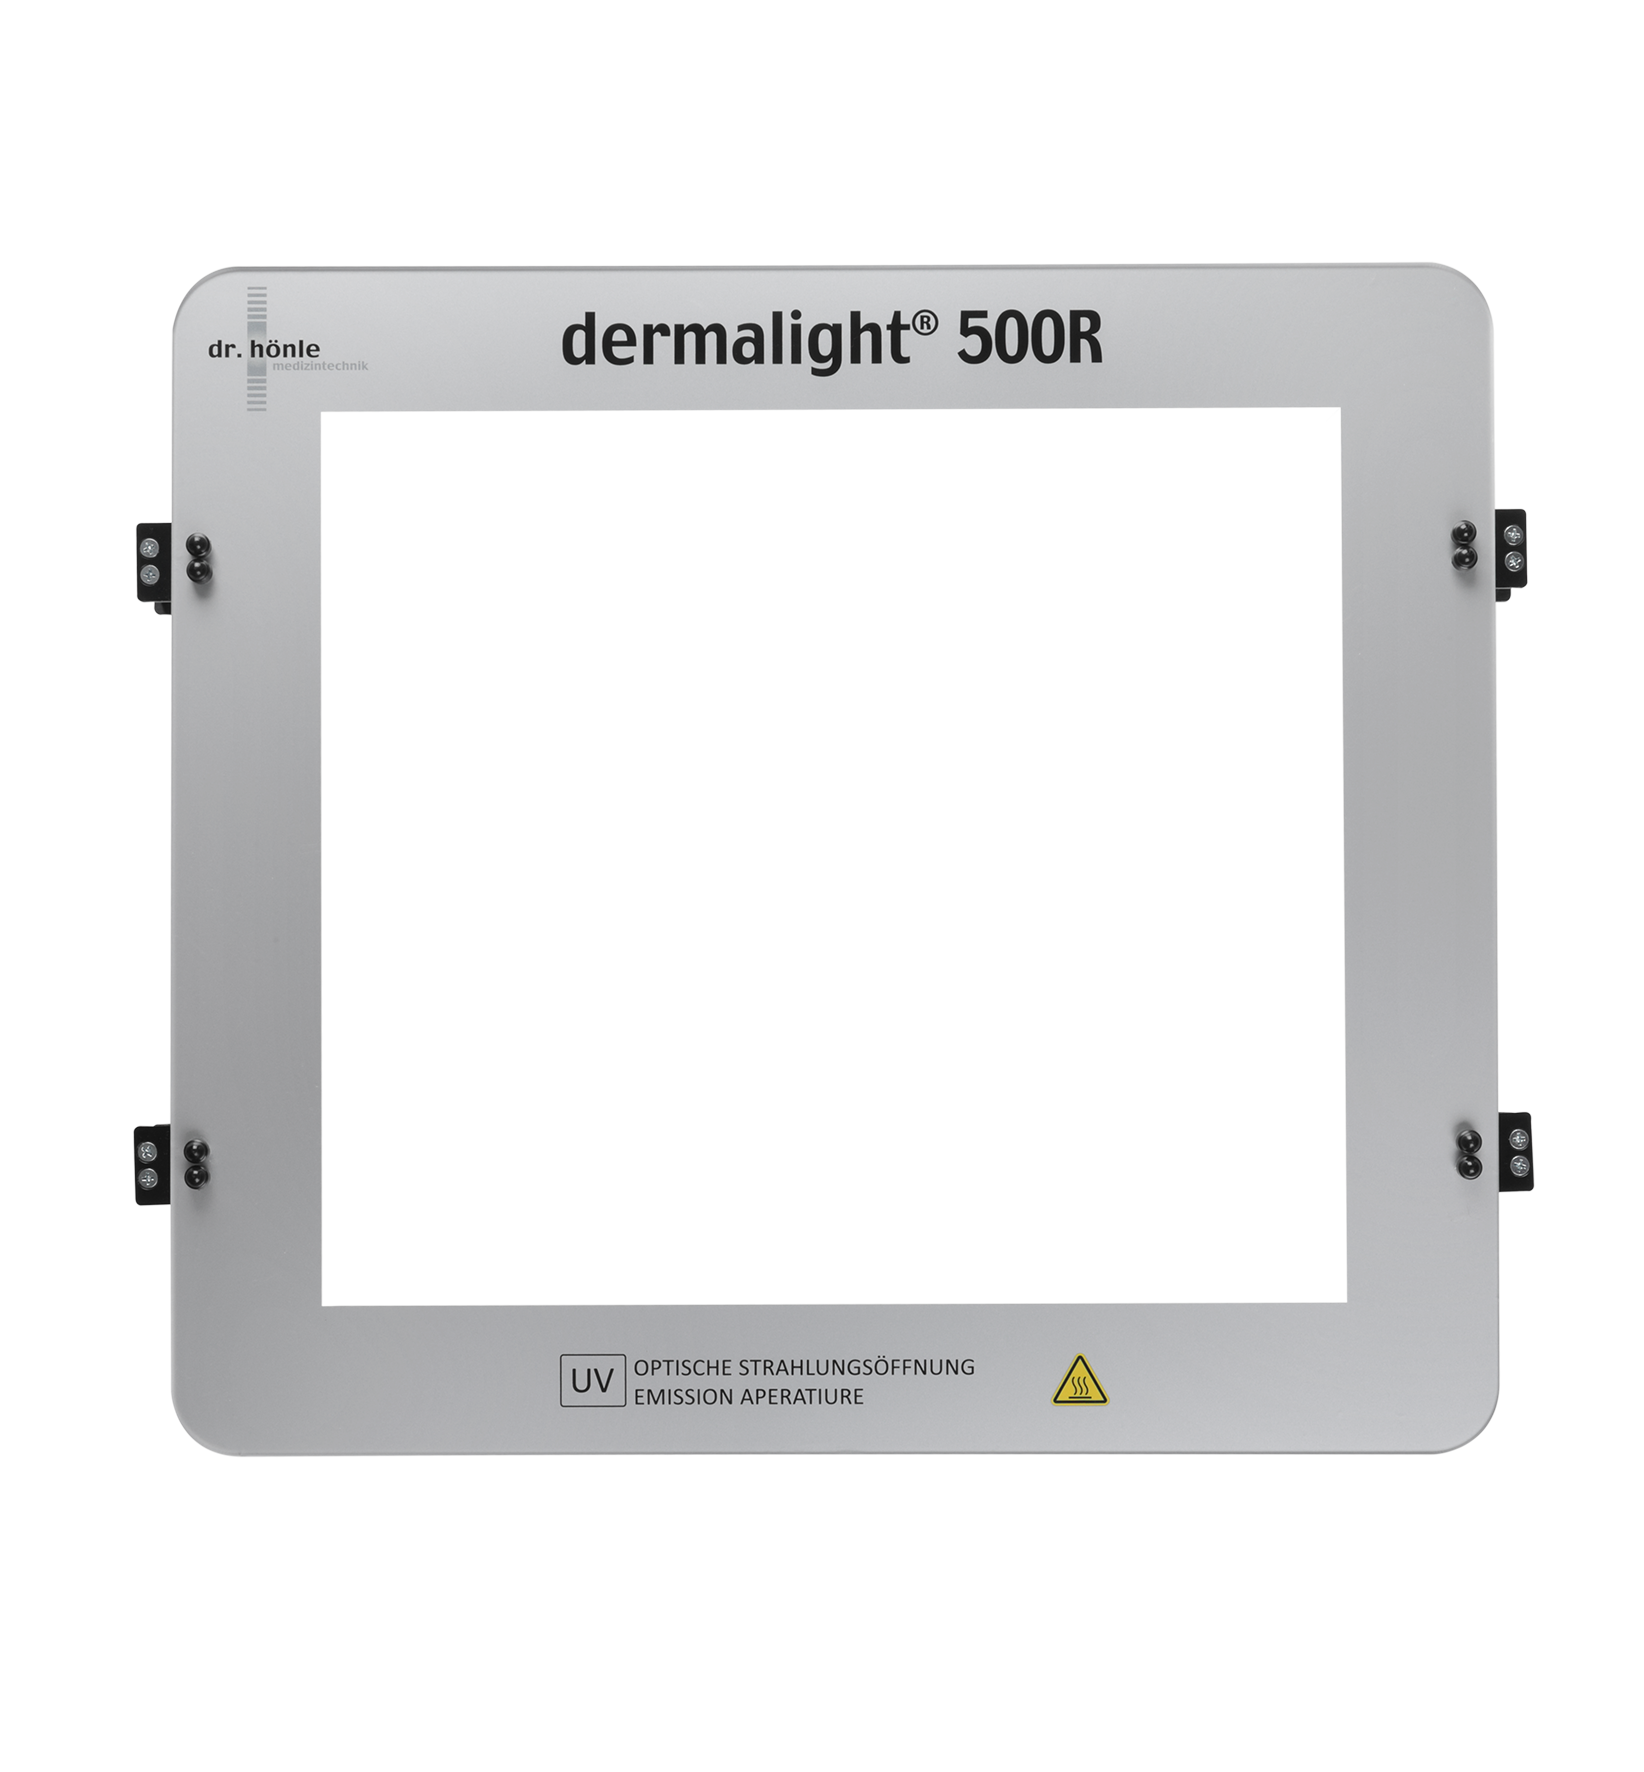 dermalight®500R Spacer